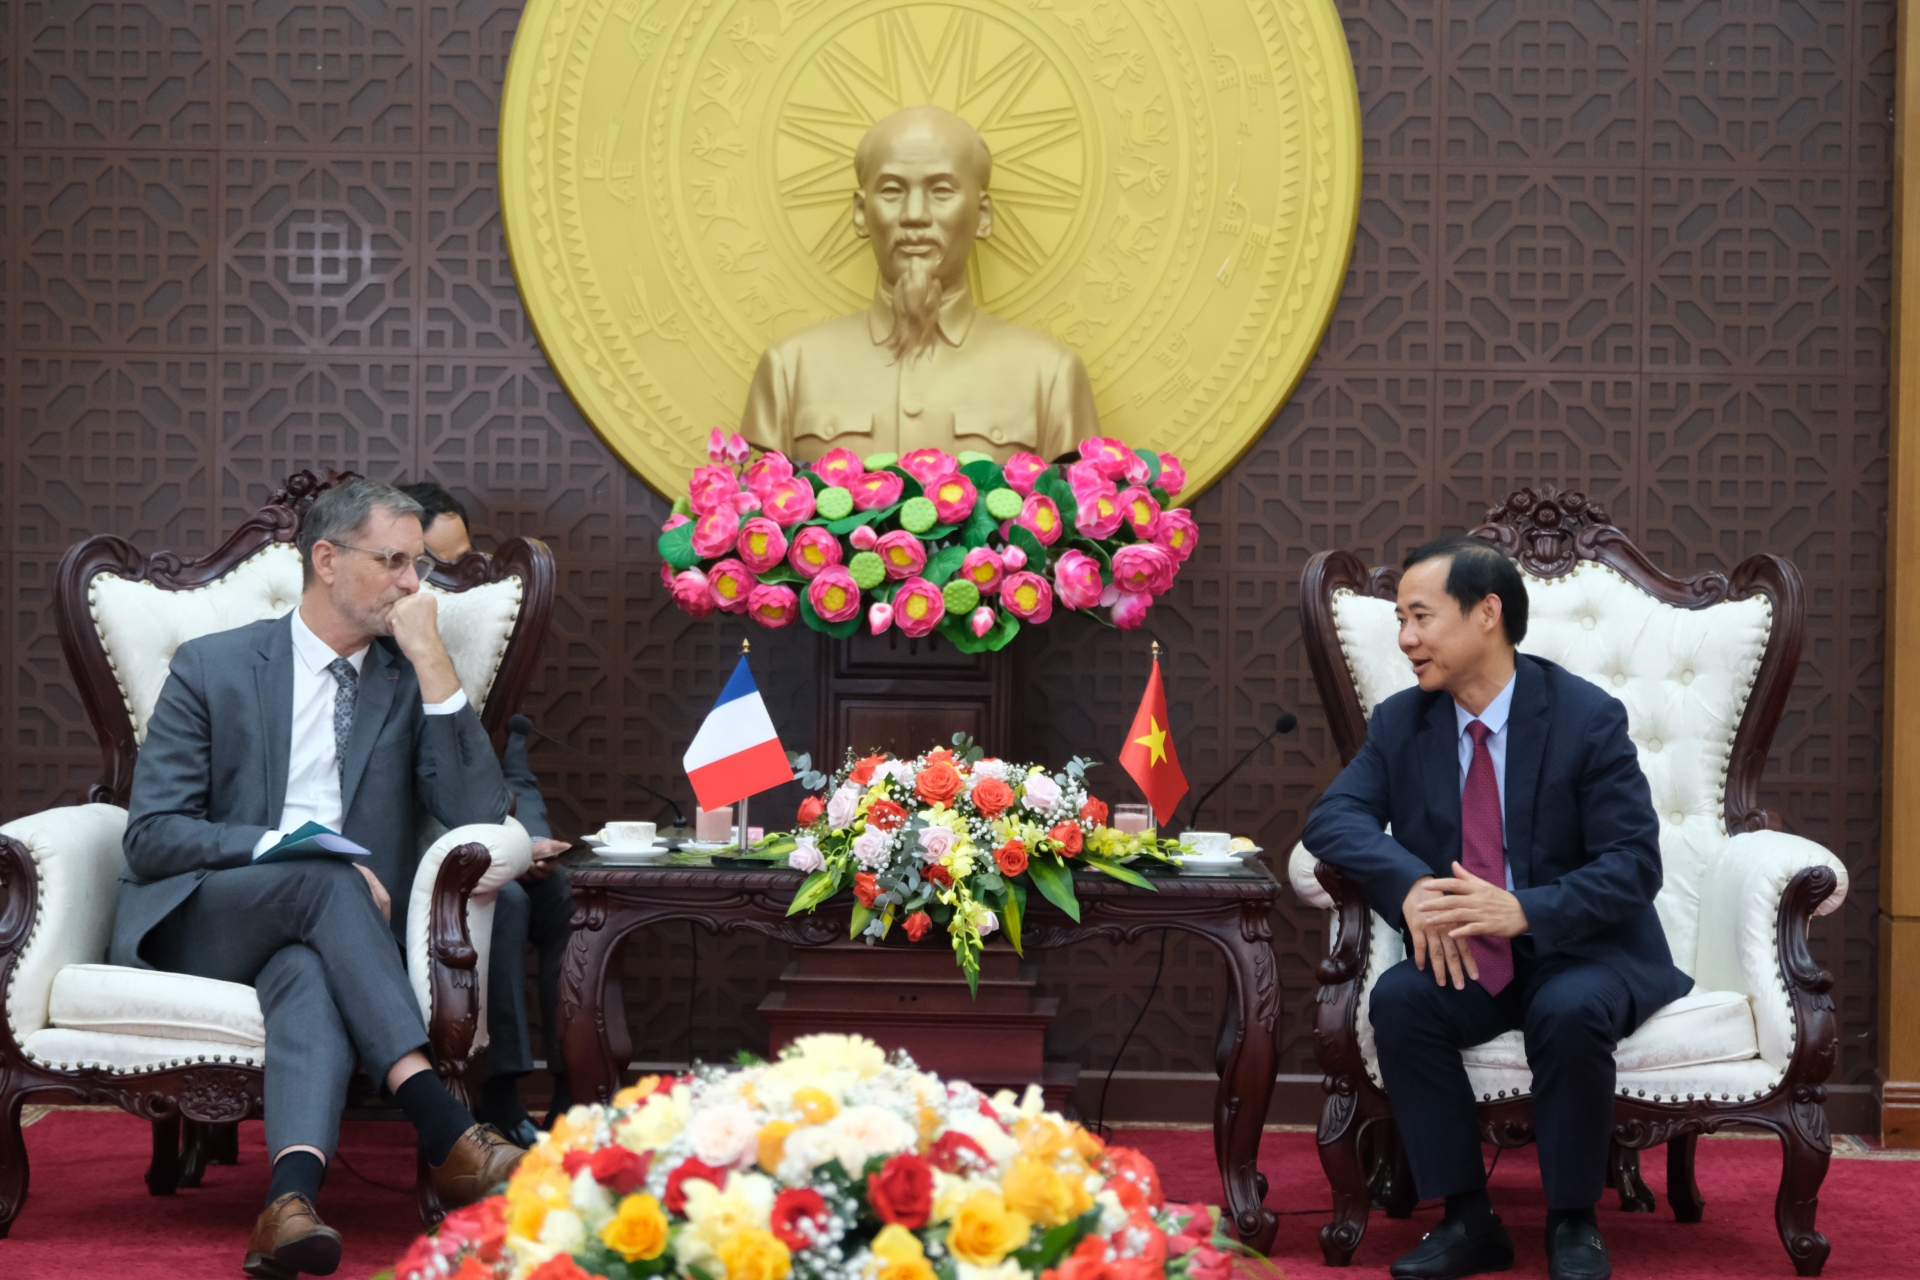 đồng chí Nguyễn Thái Học - Quyền Bí thư Tỉnh ủy Lâm Đồng đã có buổi tiếp xã giao ông Olivier Brochet - Đại sứ nước Cộng hòa Pháp tại Việt Nam.